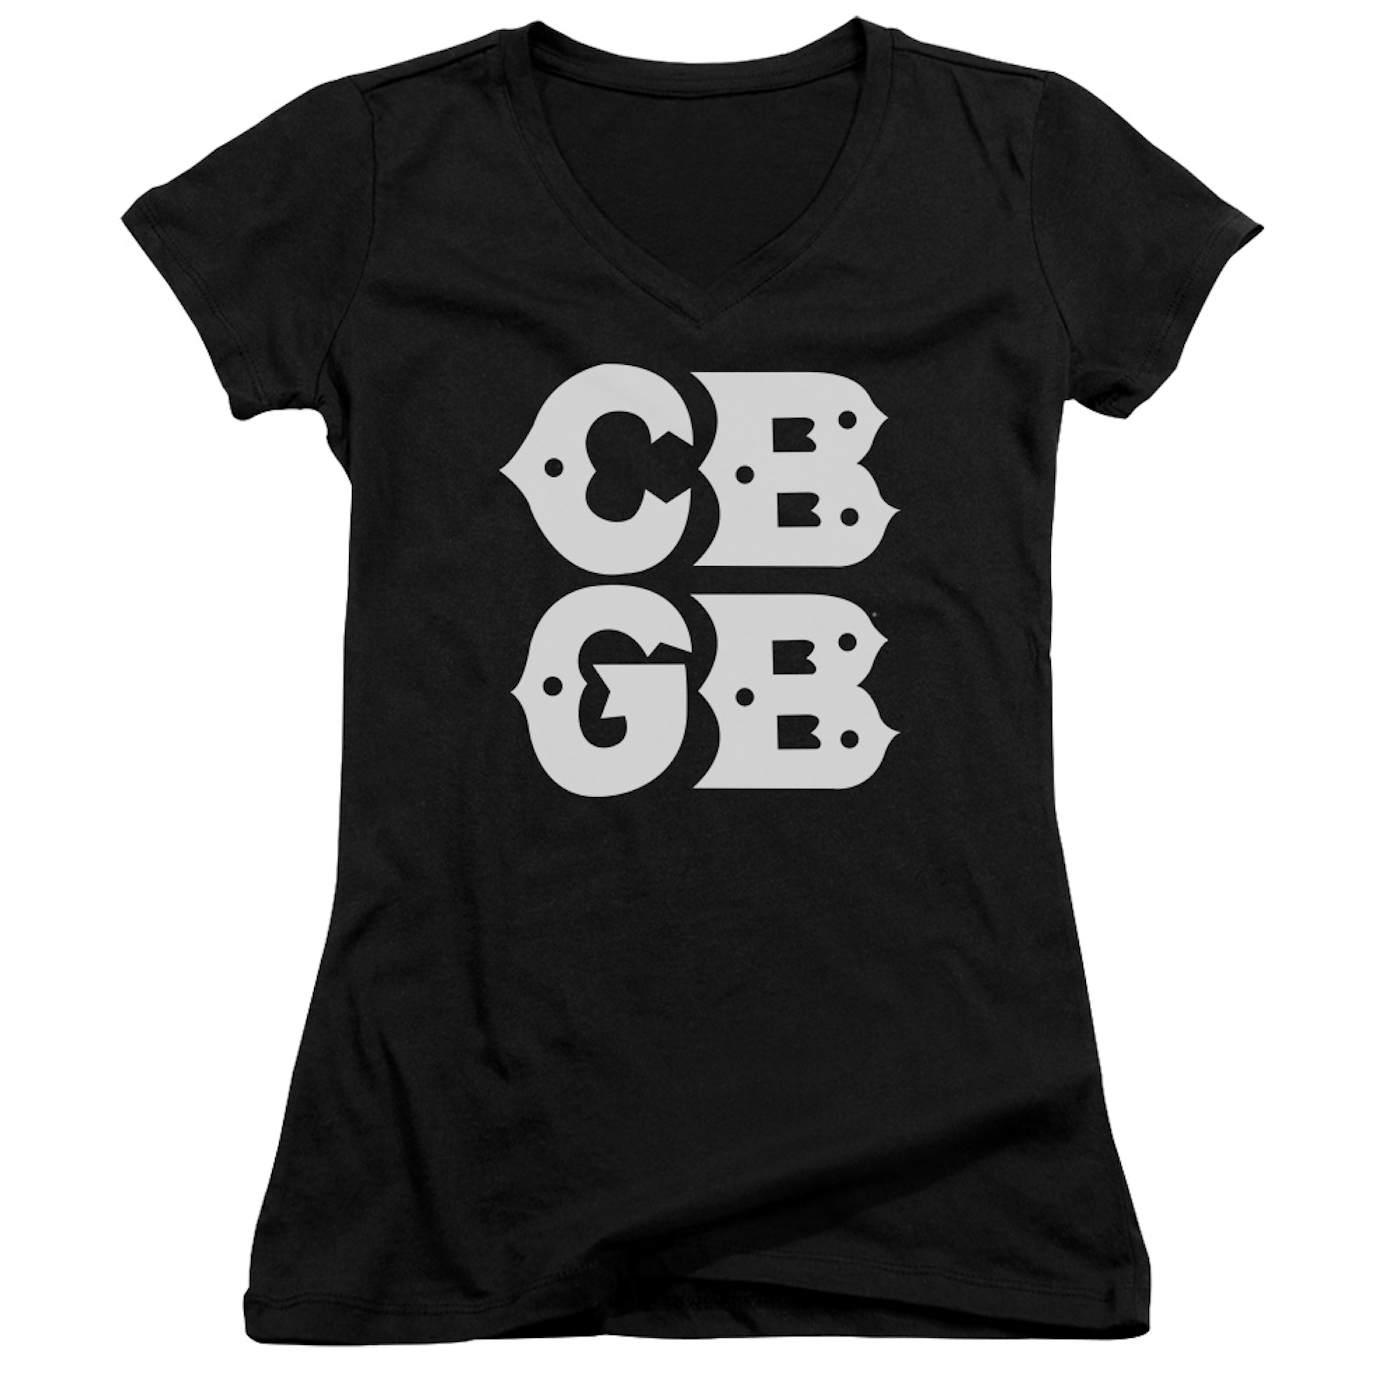 Cbgb Junior's V-Neck Shirt | STACKED LOGO Junior's Tee